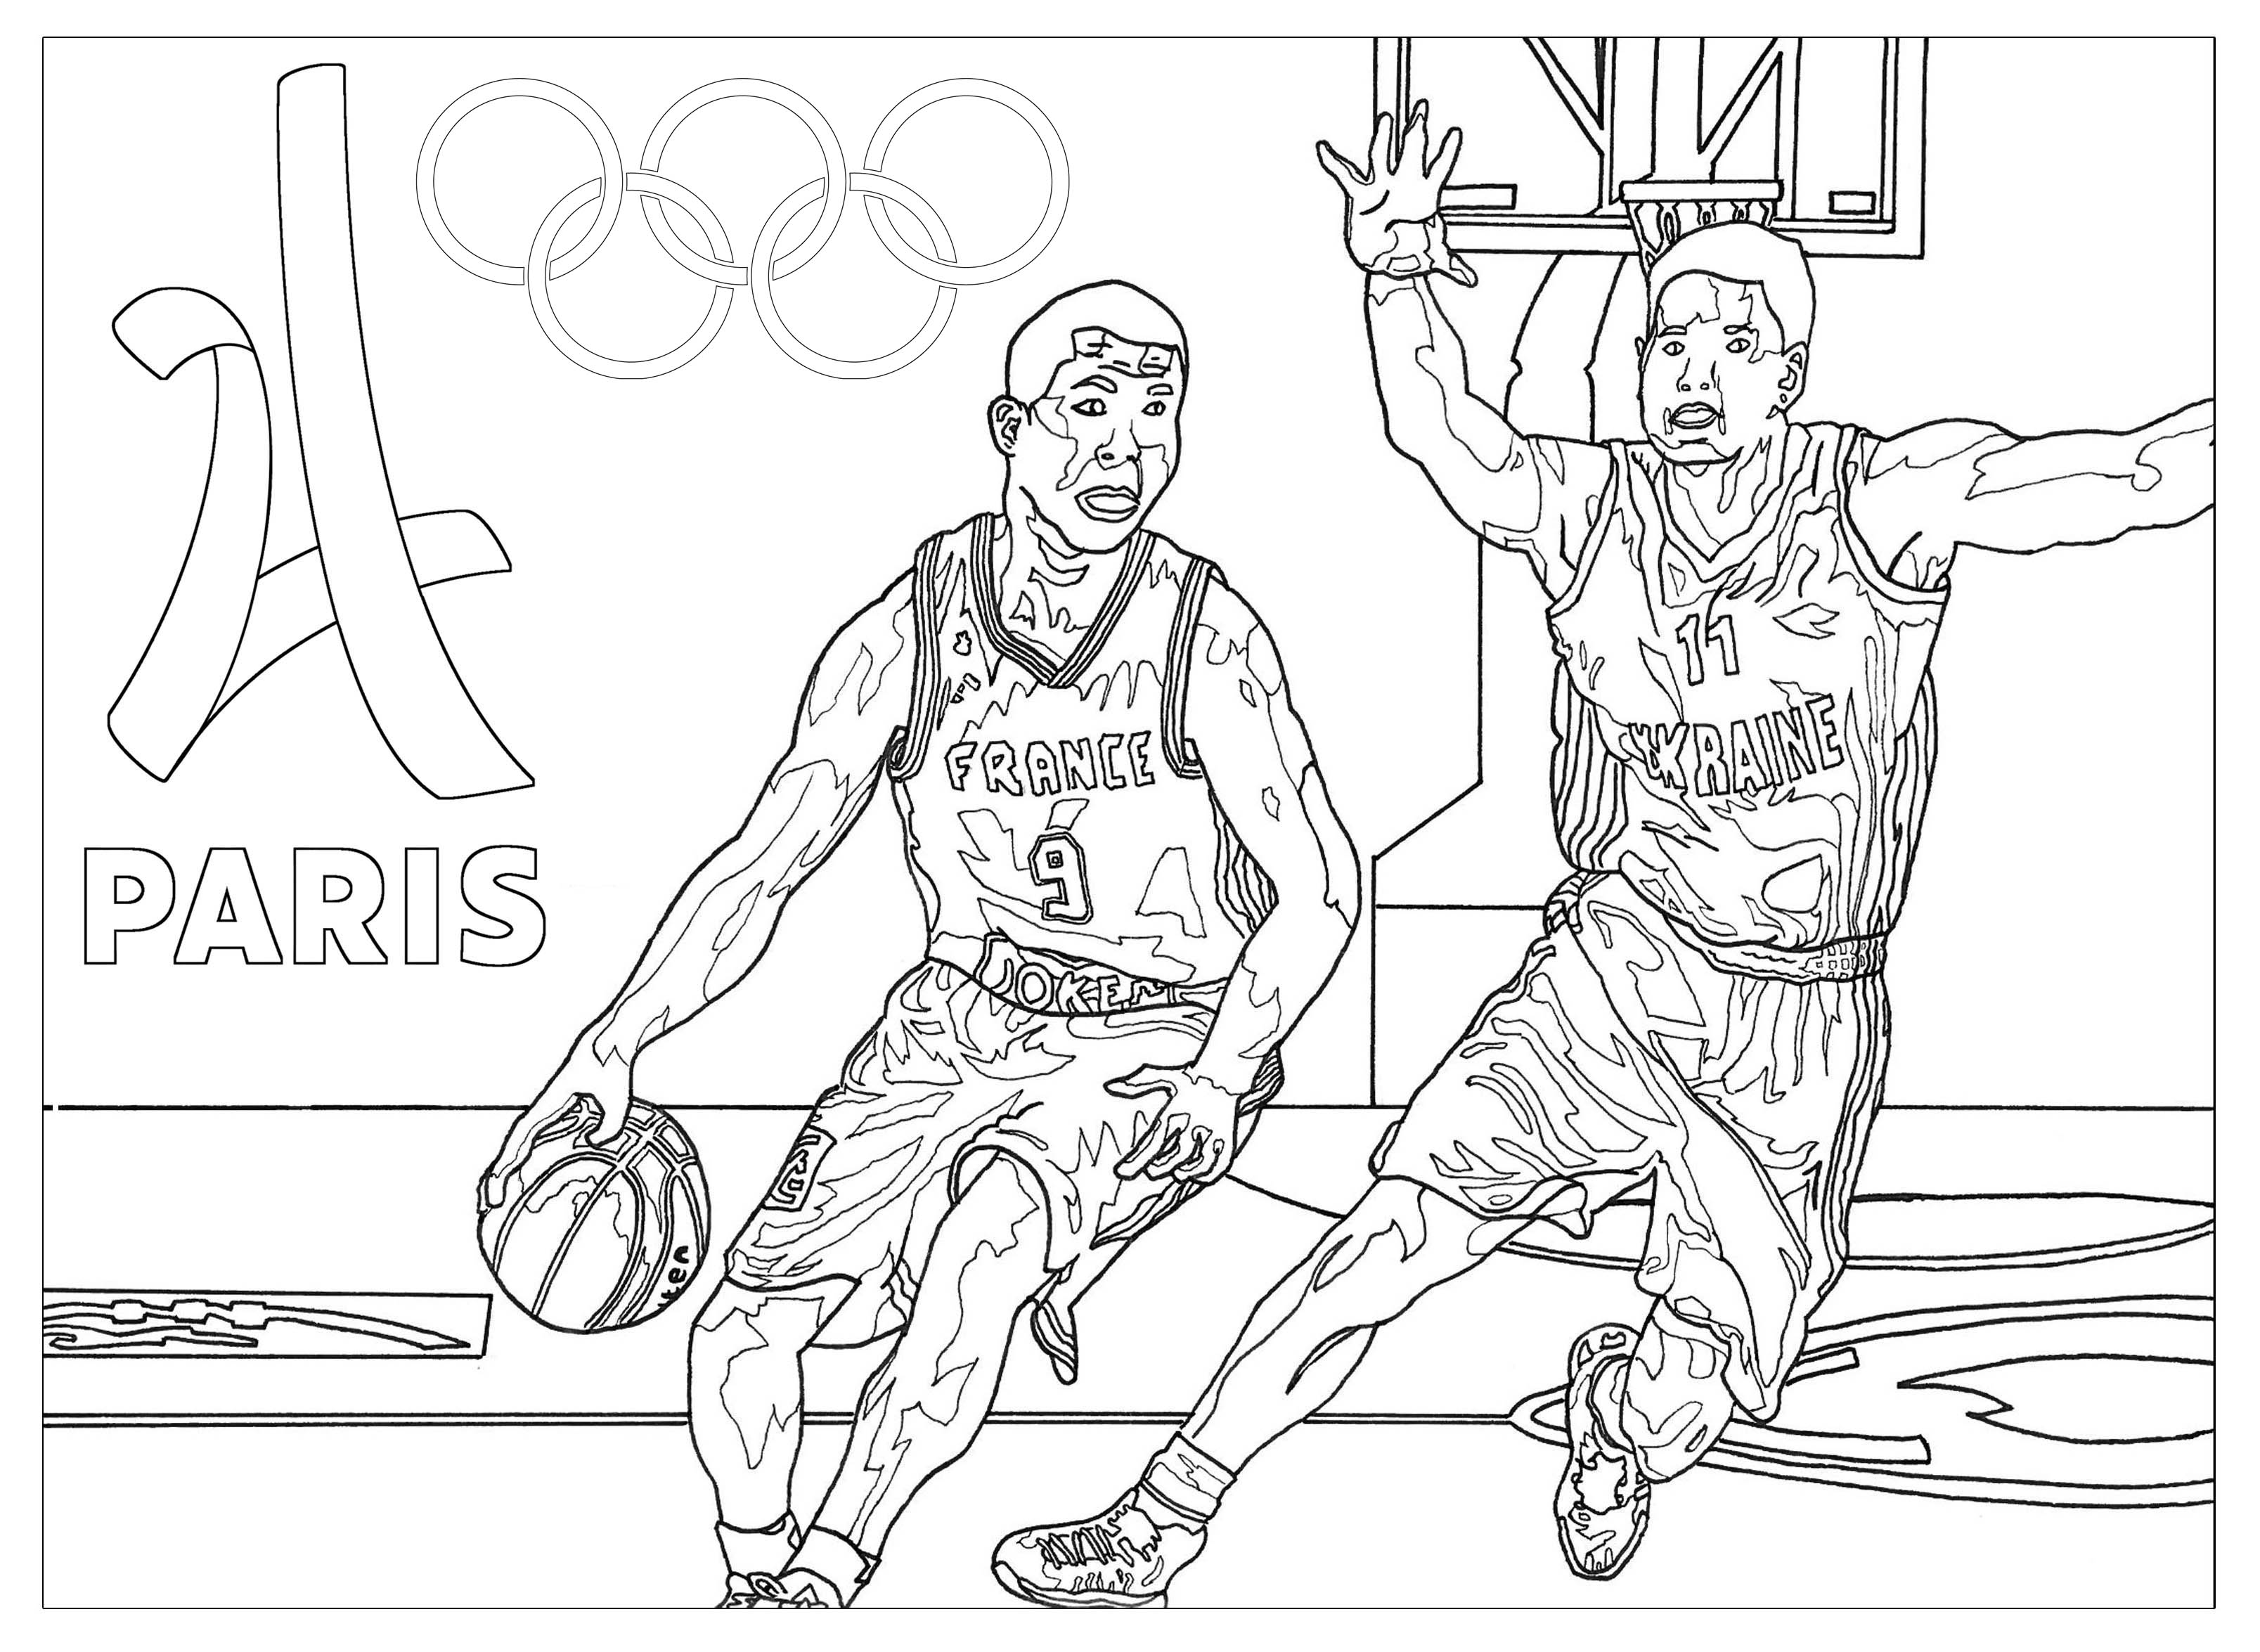 Increíble Dibujos para colorear de Juegos Olímpicos para descargar